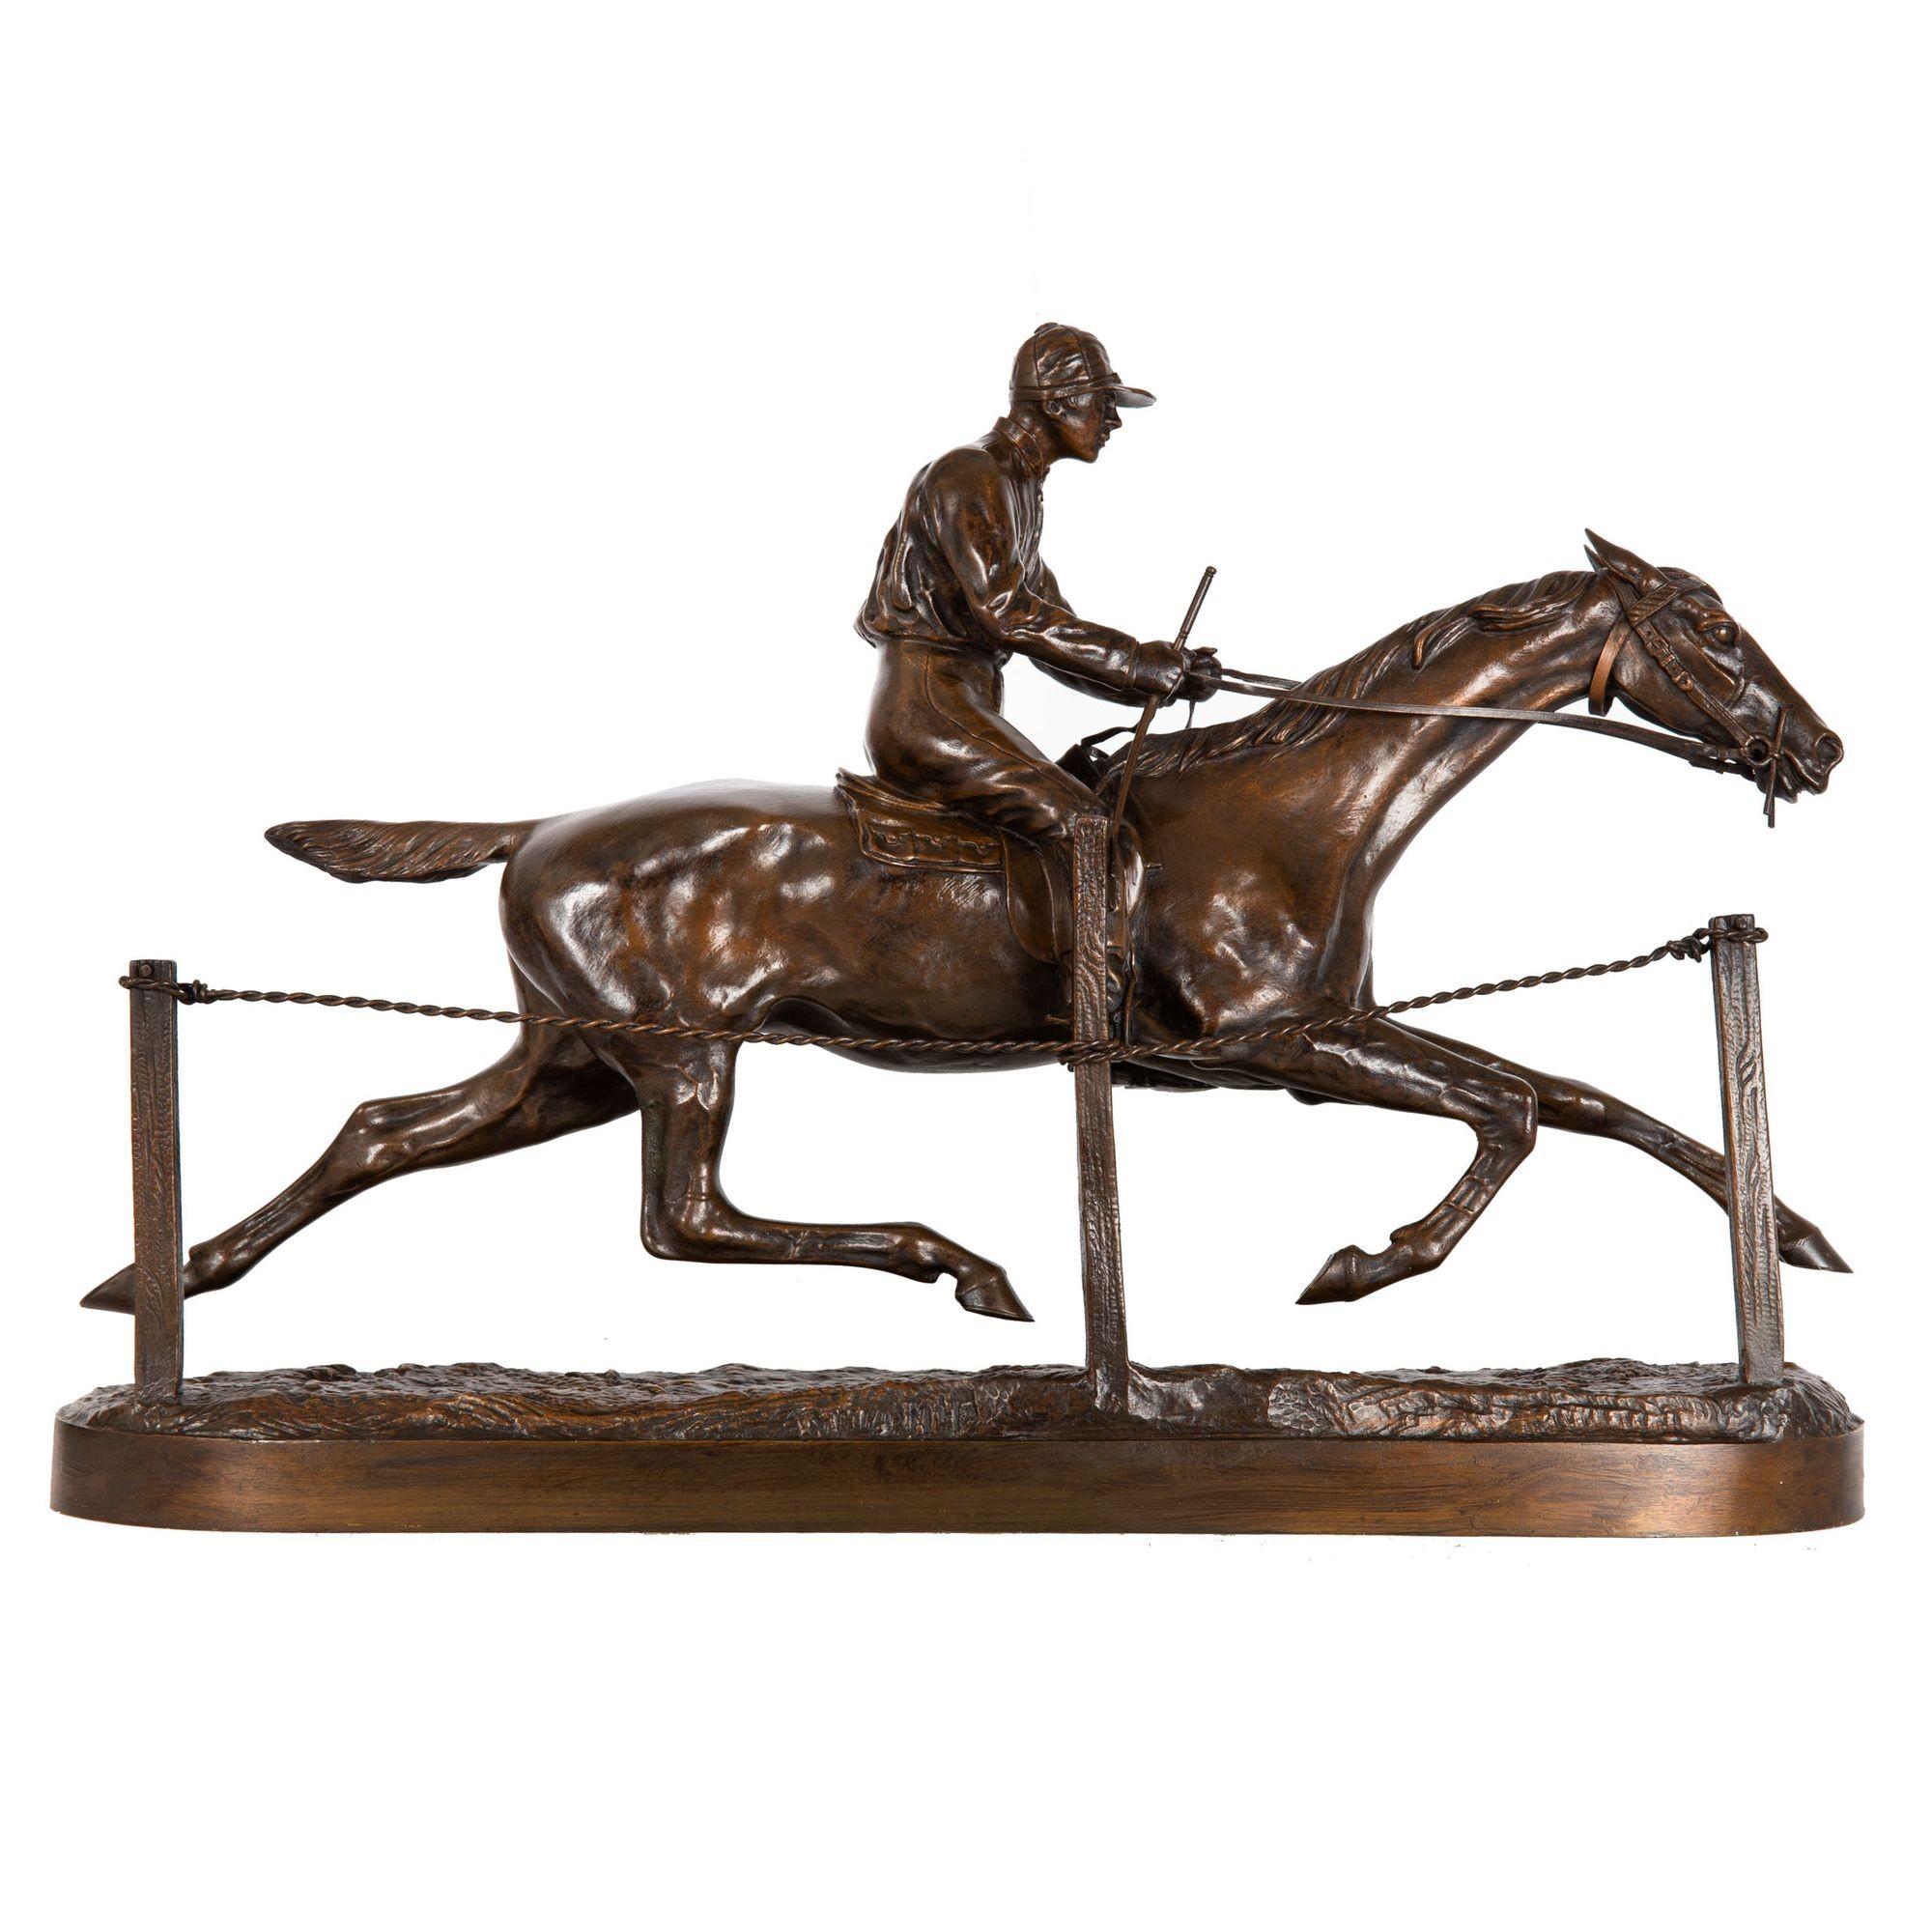 H.R. DE VAINS
Französisch, 1848 - 1886

Jockey auf einem Rennpferd

Patinierte Bronze  unterzeichnet in der Basis 